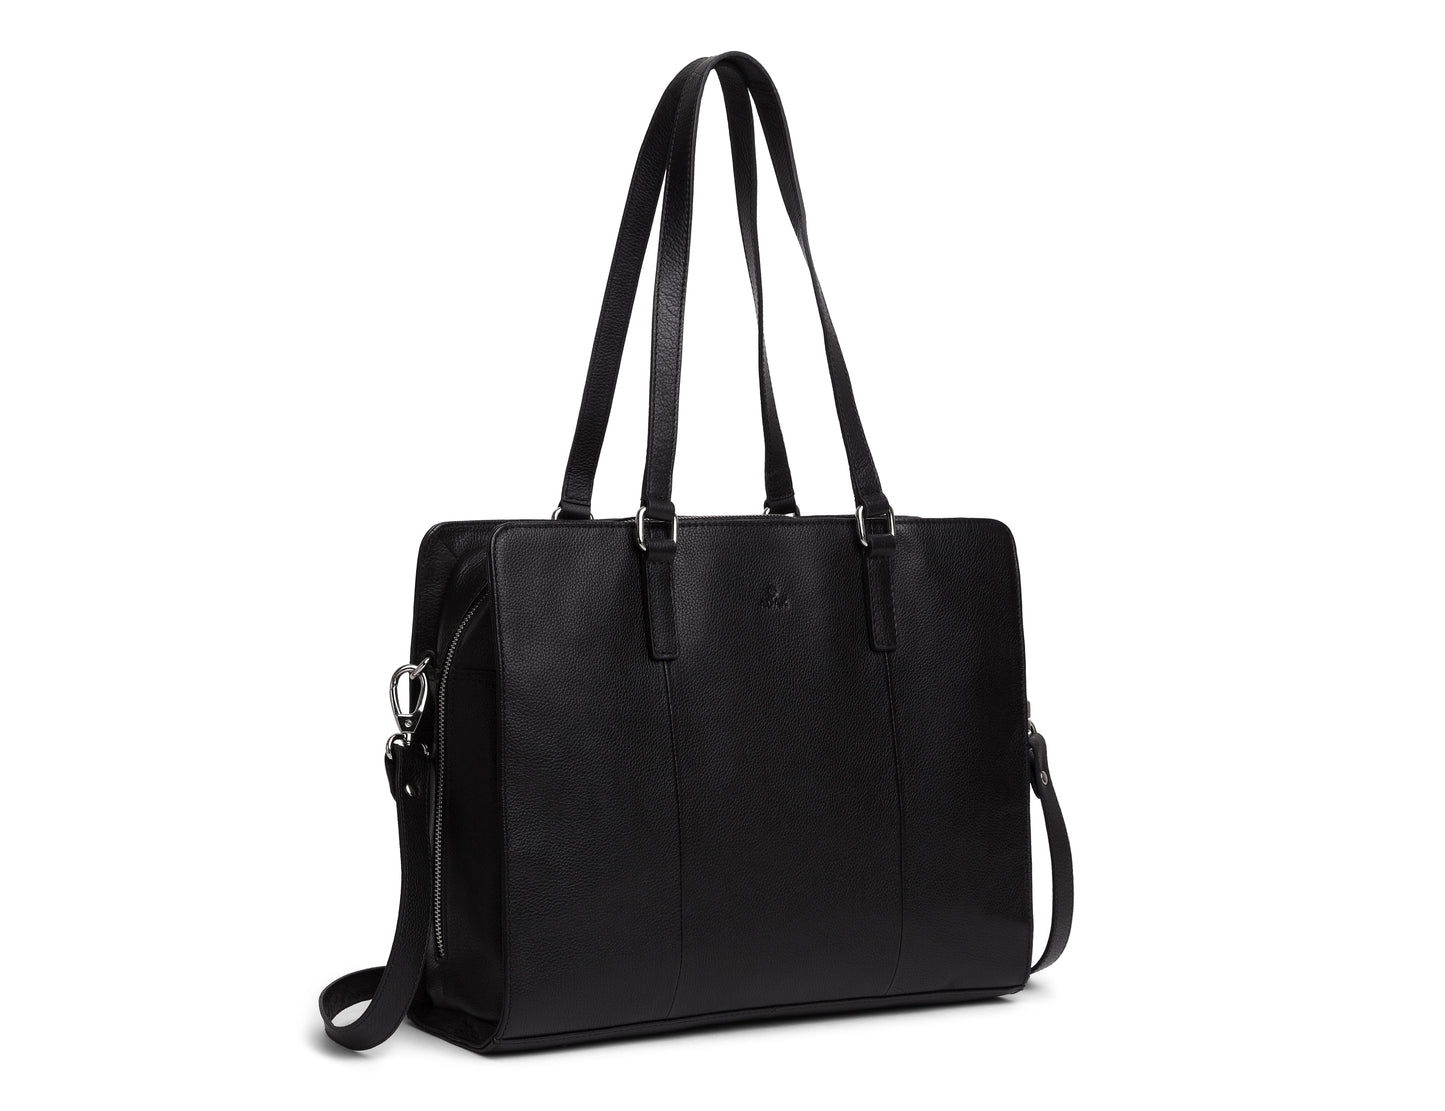 Business Tasche 276625 von Adax - Laure Bags and Travel